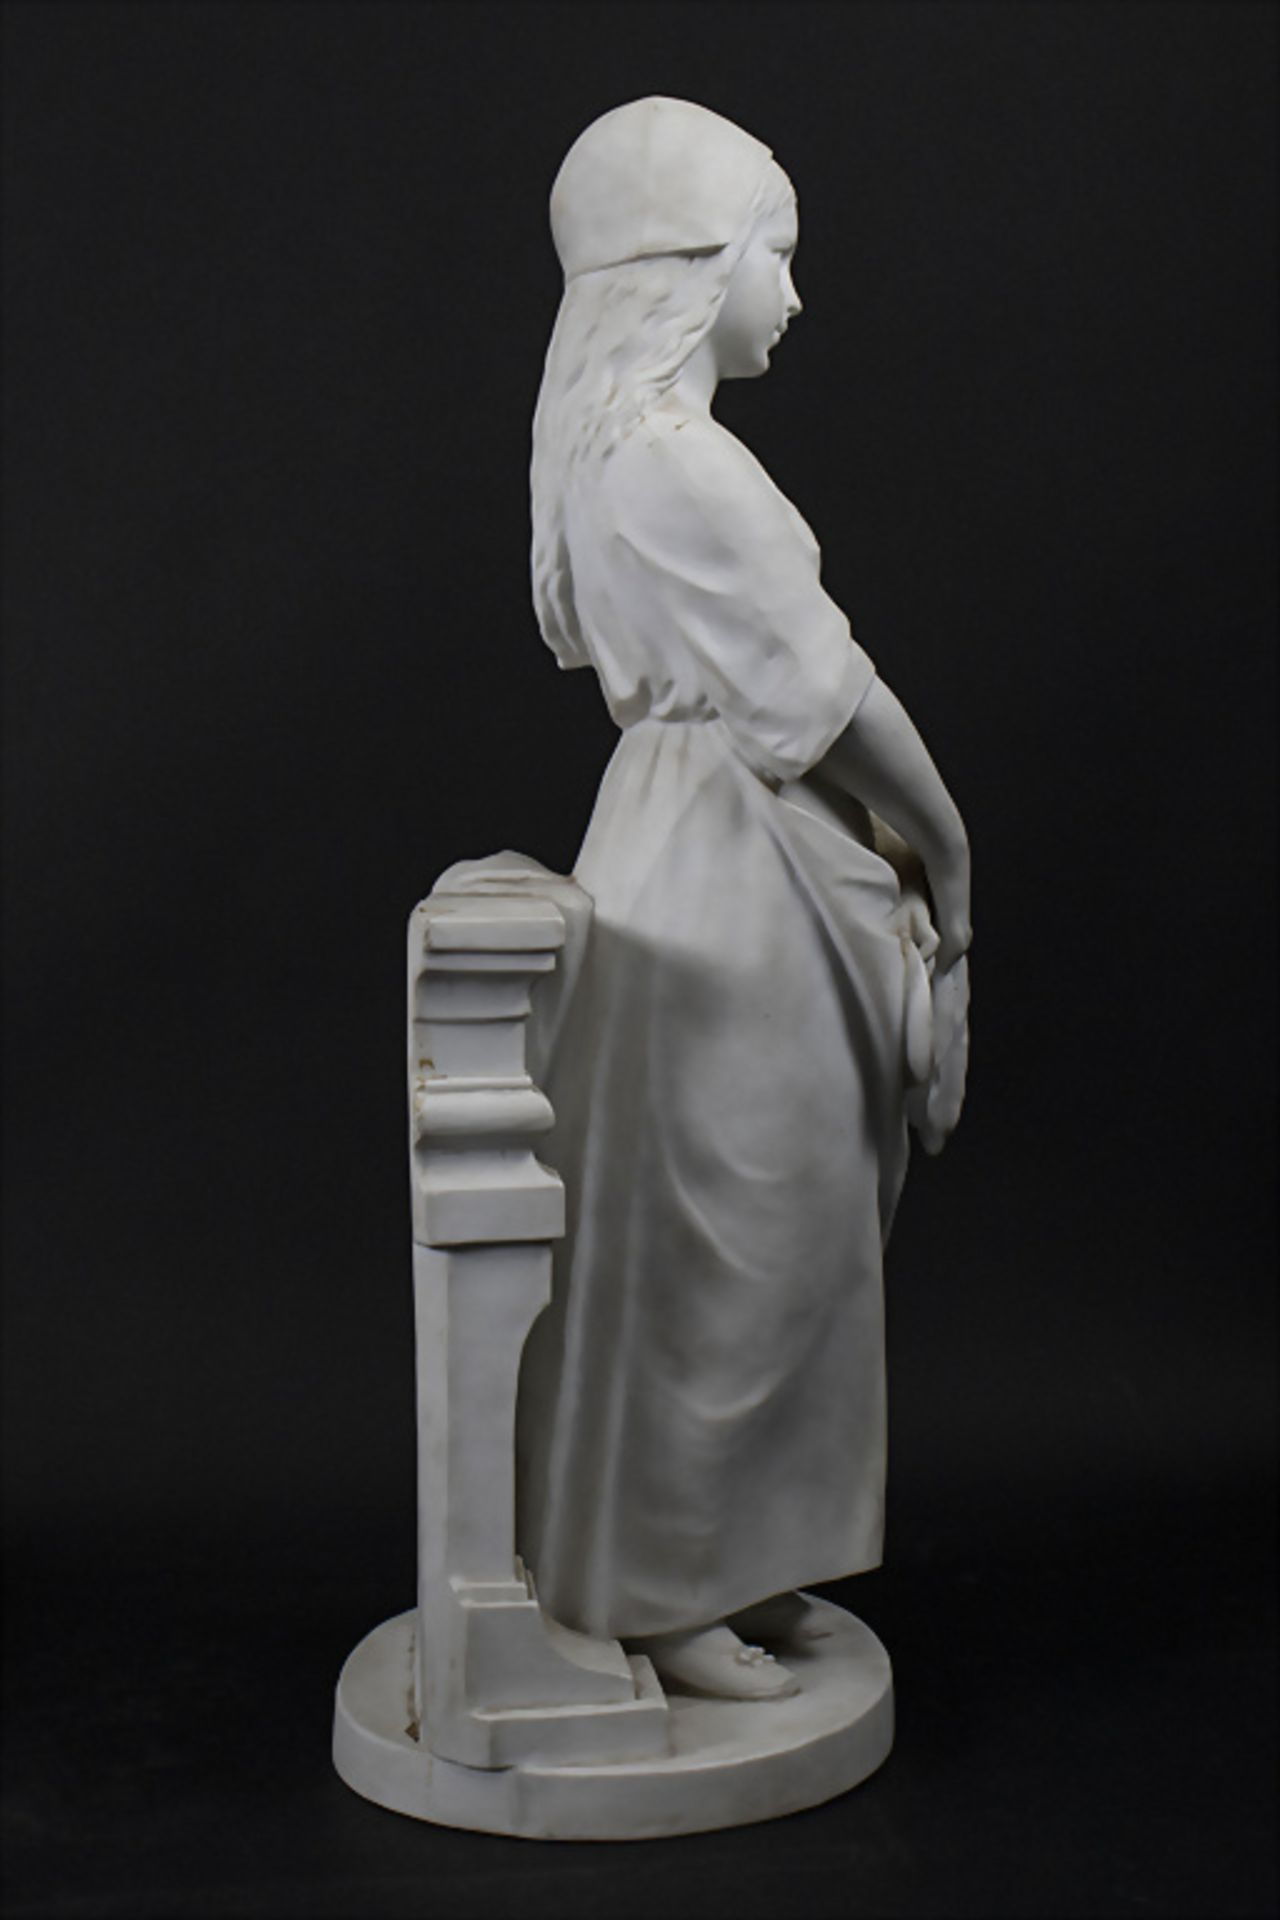 Nicolas Lecorney (aktiv 1880-84), große Bisquitporzellan Skulptur 'Junges Mädchen' / A large ... - Bild 5 aus 8